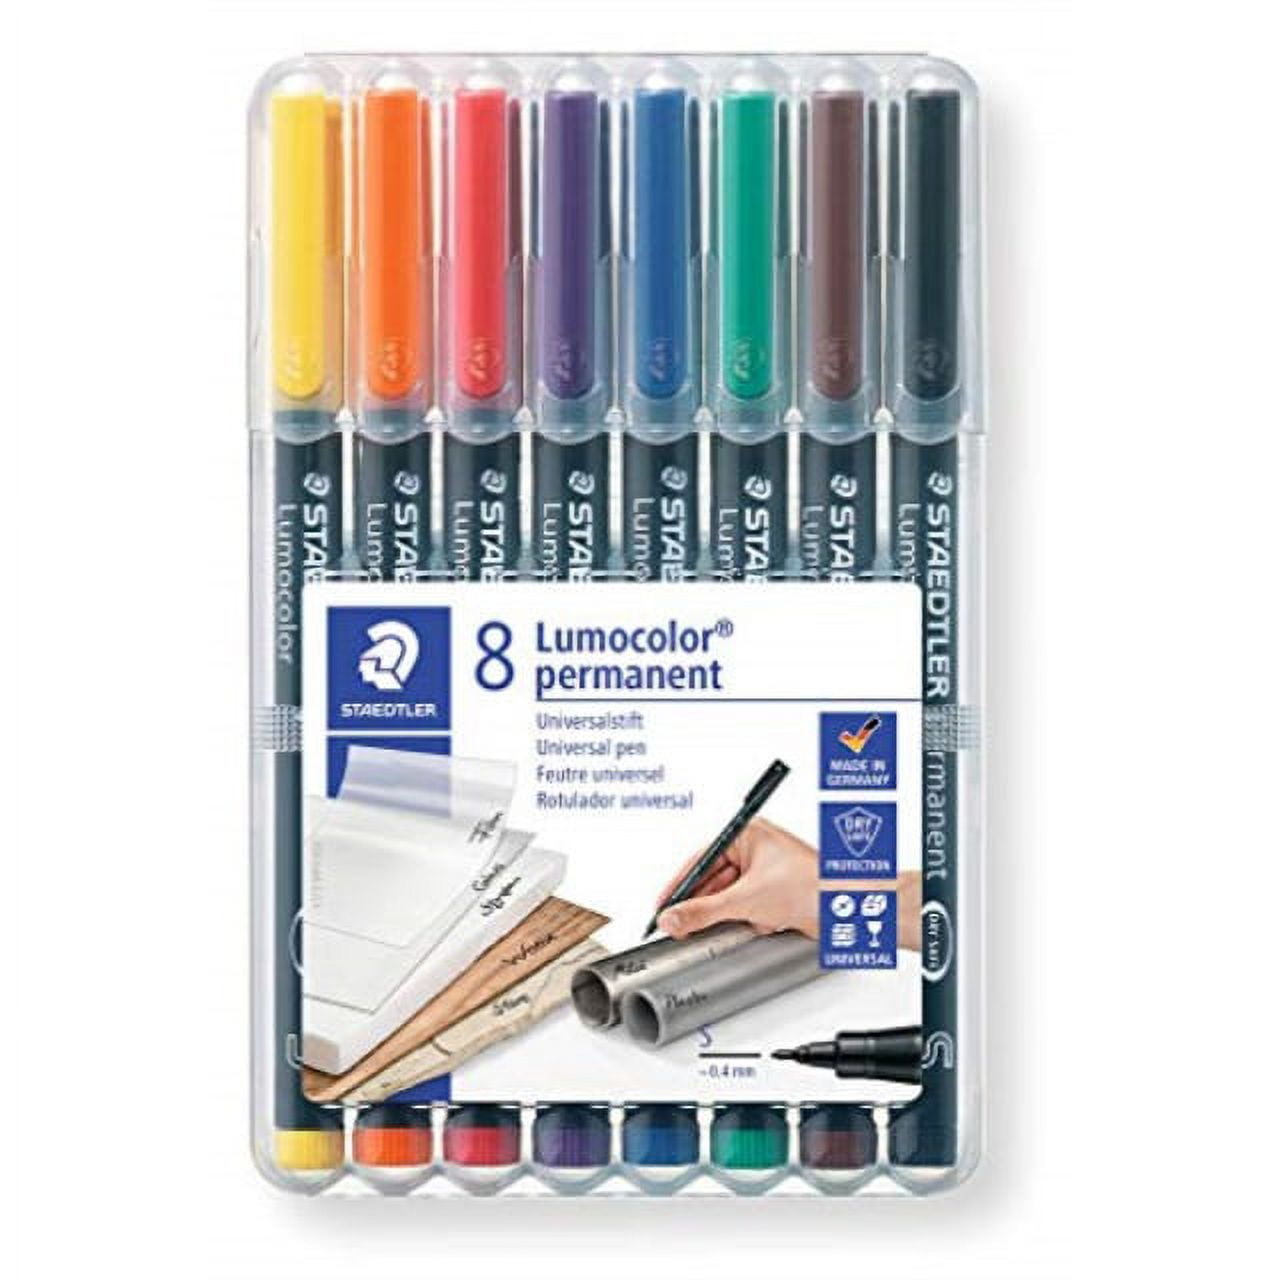 staedtler lumocolor permanent extra fine marker pen, 0.4mm 8 color